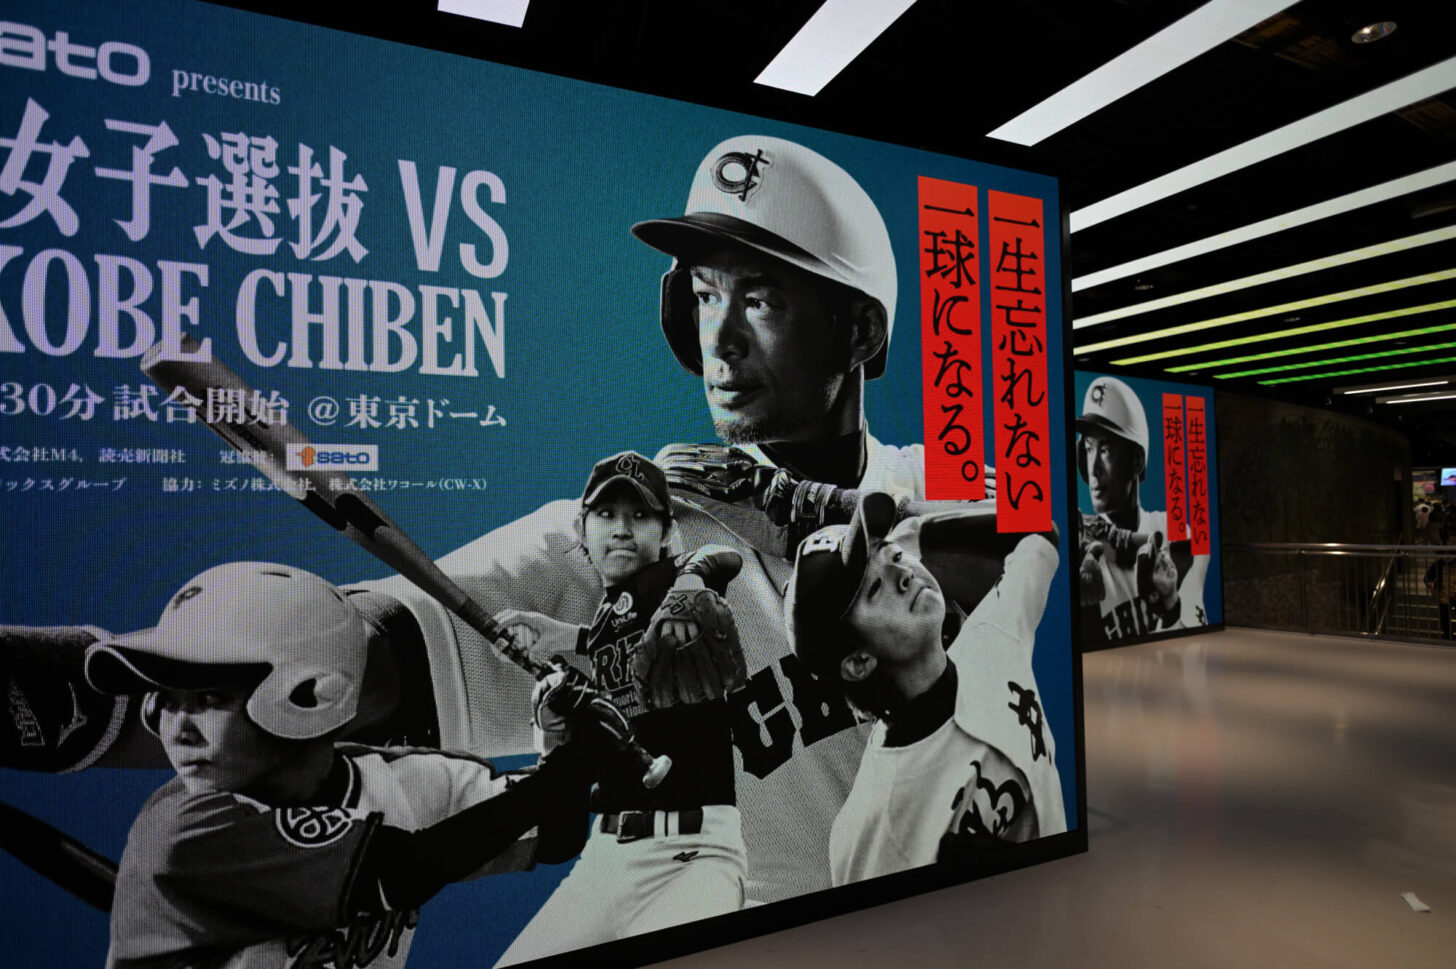 高校野球女子選抜 vs イチロー選抜 KOBE CHIBEN 会場の東京ドーム